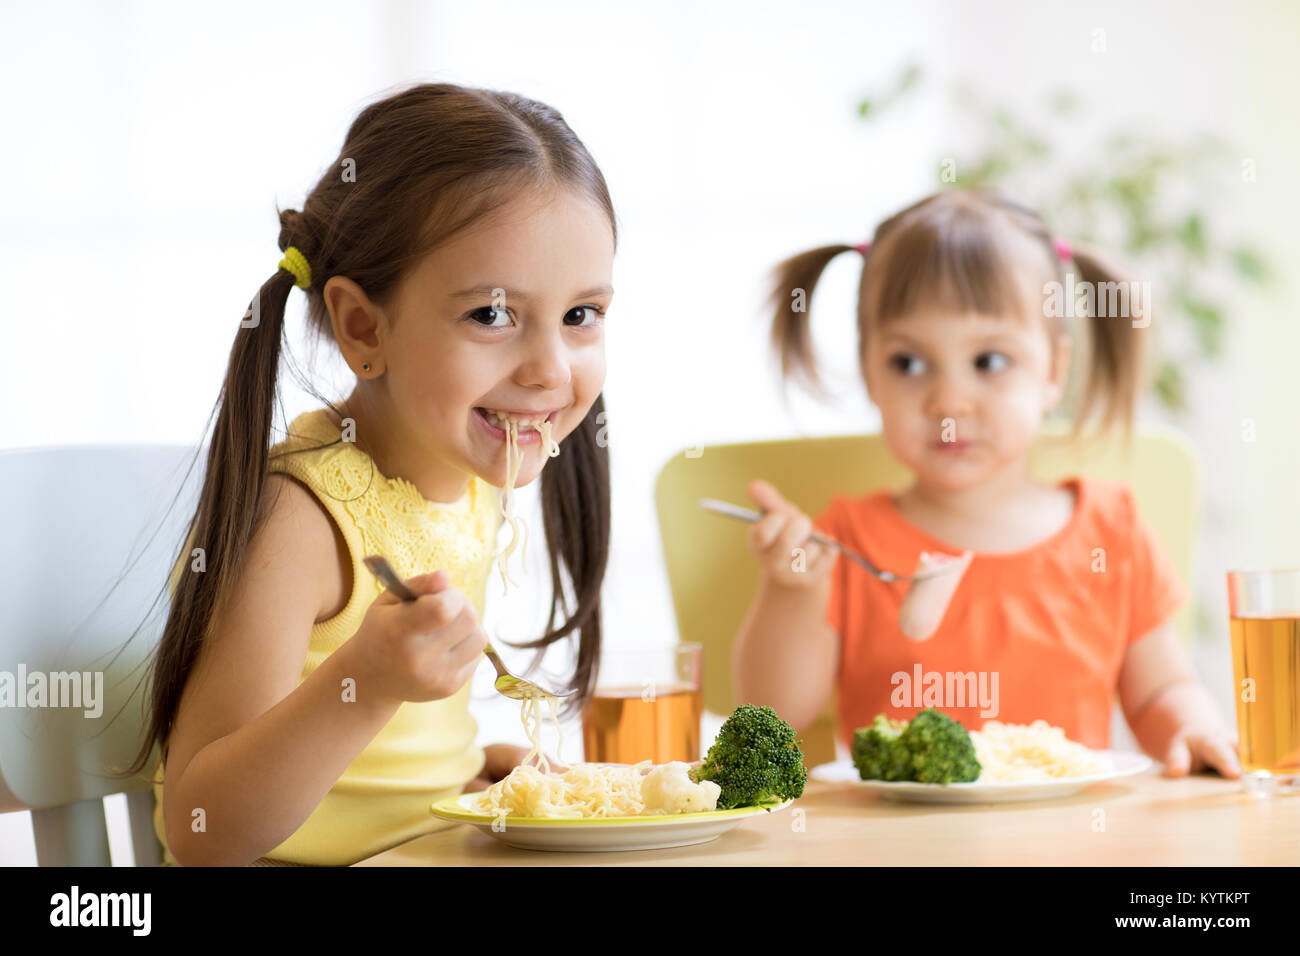 Los niños que comen alimentos saludables en el kinder, guardería o en casa Foto de stock